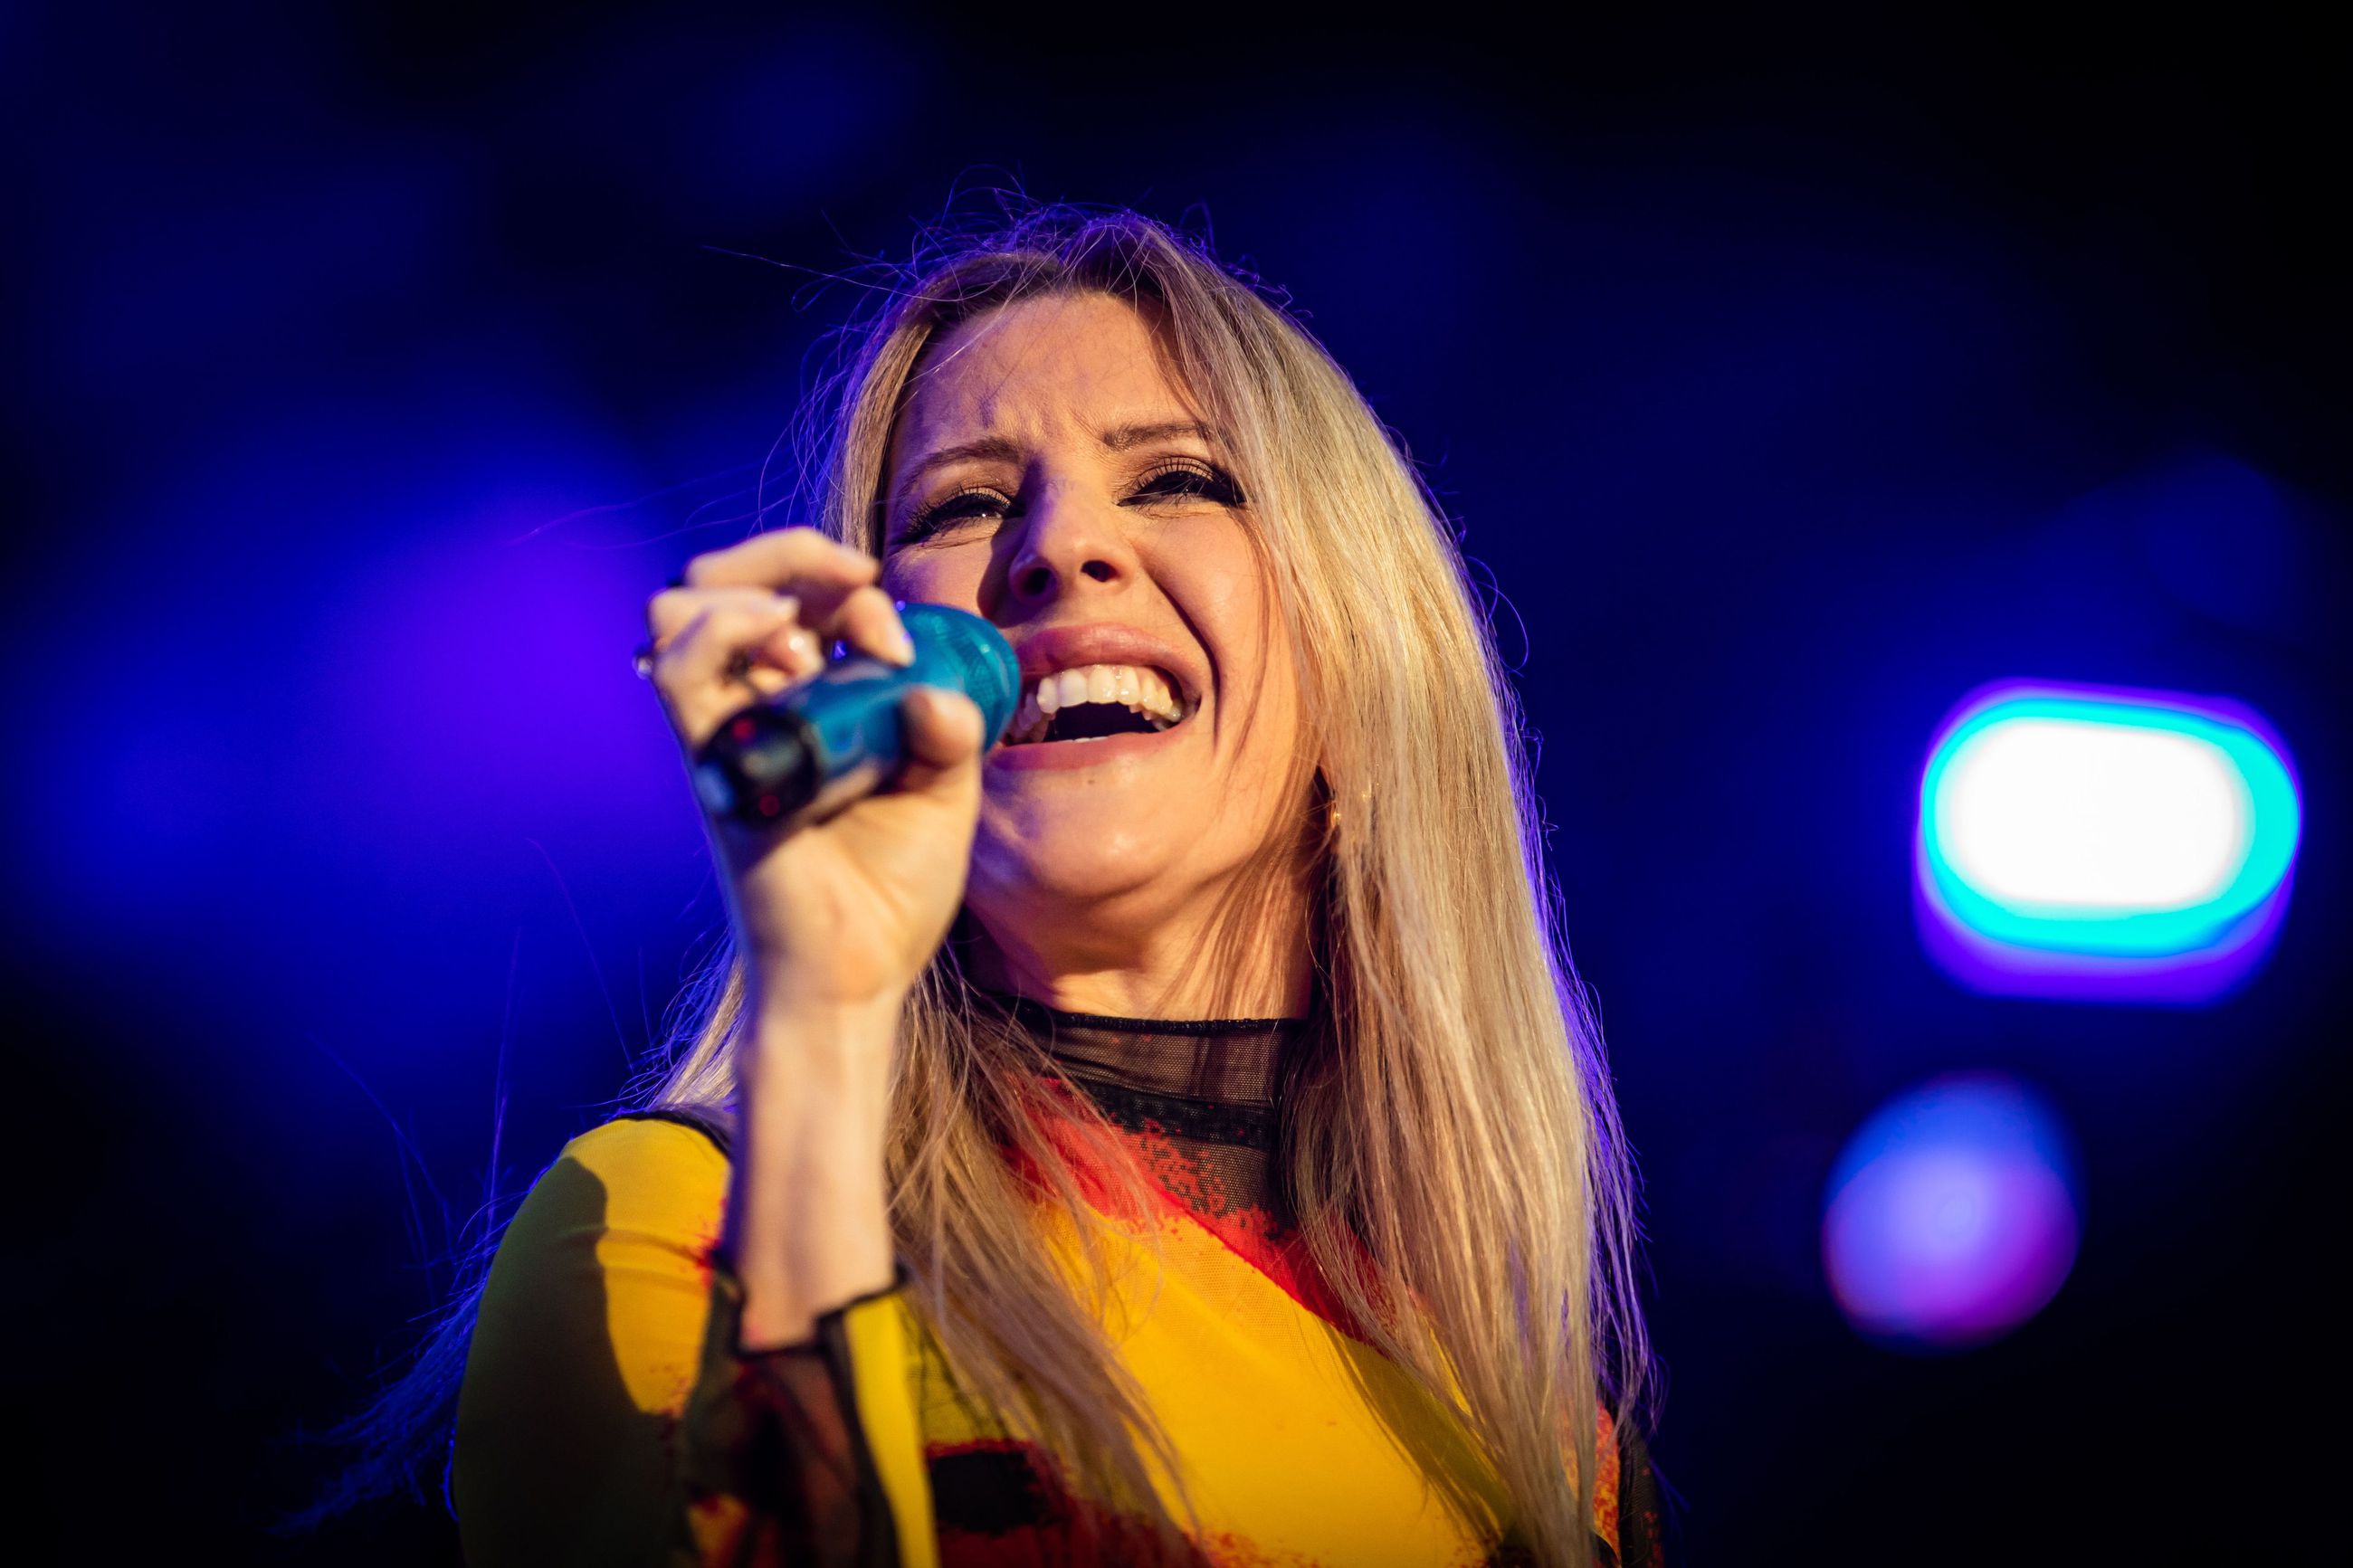 Qstockin lauantain pääesiintyjänä nähtävä Ellie Goulding tunnetaan muun muassa Lights-kappaleesta. Kuva kesältä 2022, jolloin Goulding esiintyi Lissabonissa.